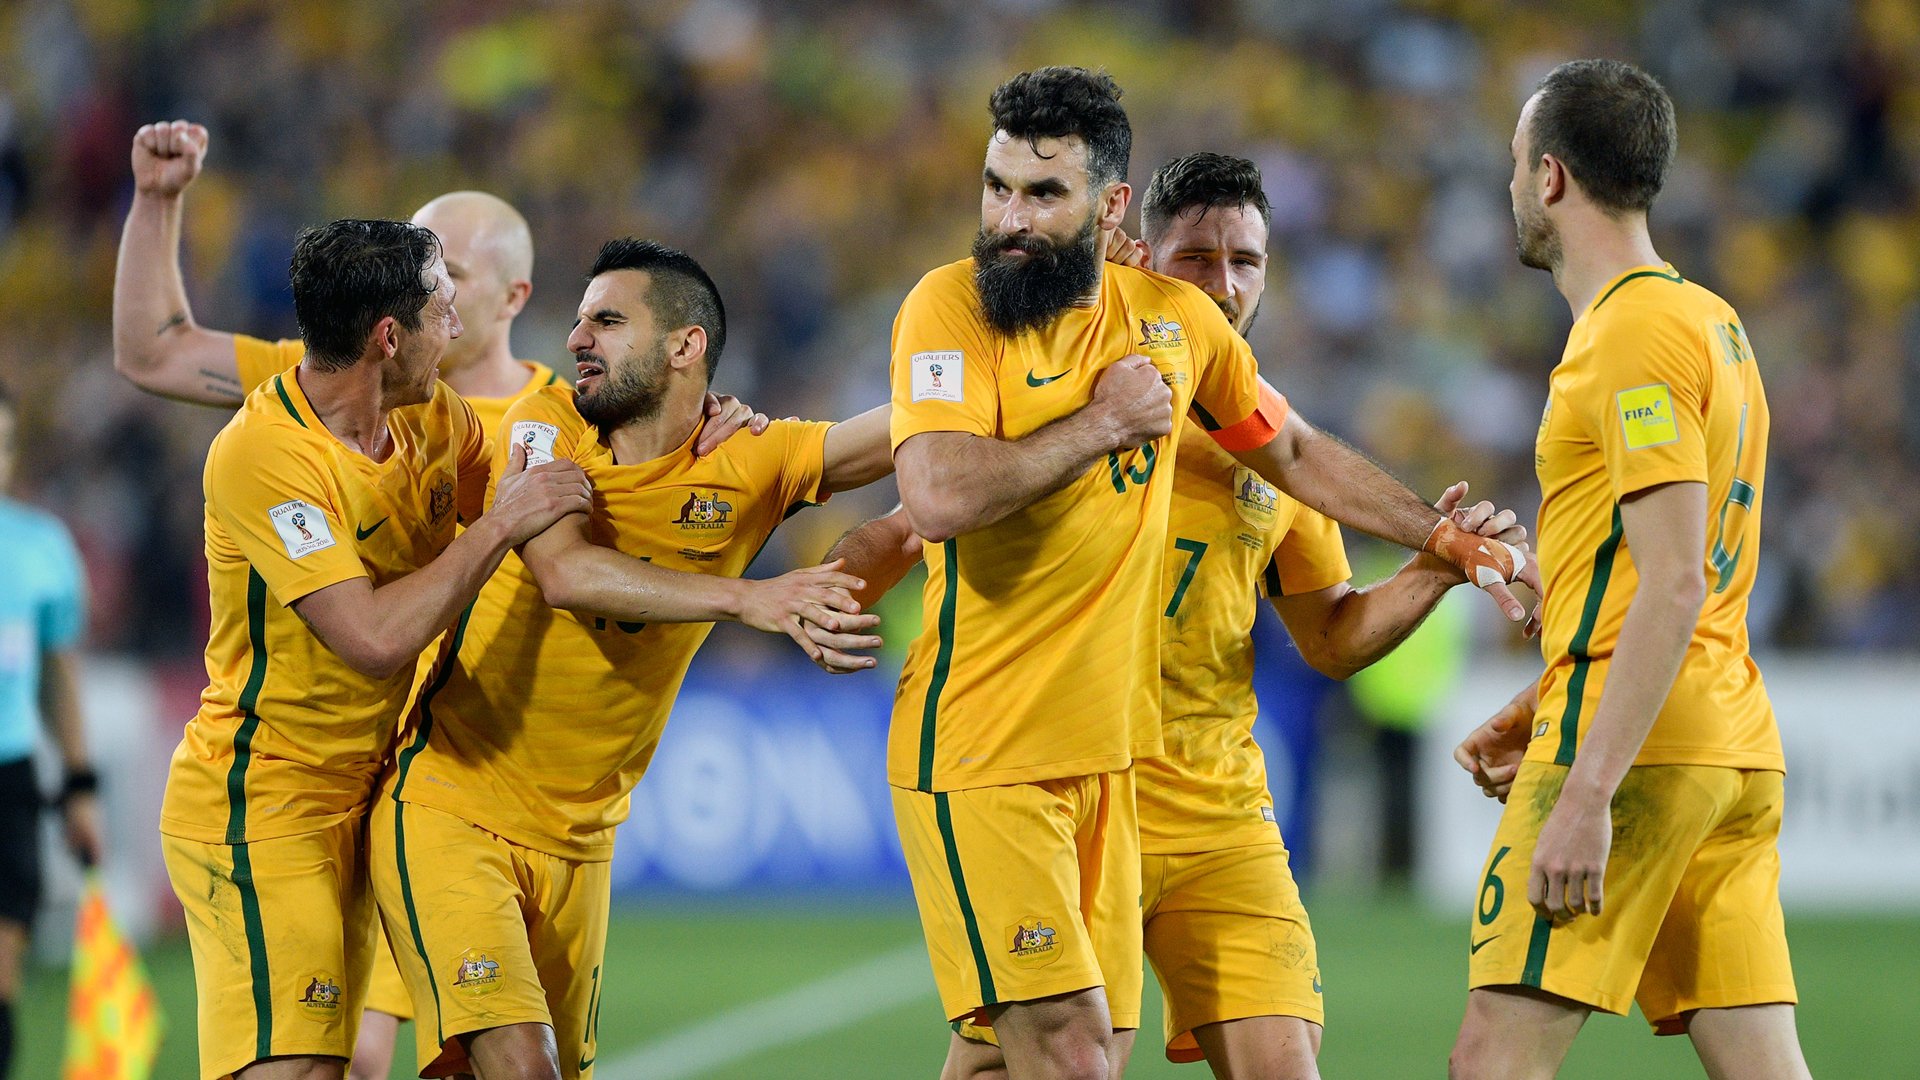 REPESCAGEM: Austrália bate Honduras por 3 a 1 e fatura a penúltima vaga na Copa do Mundo